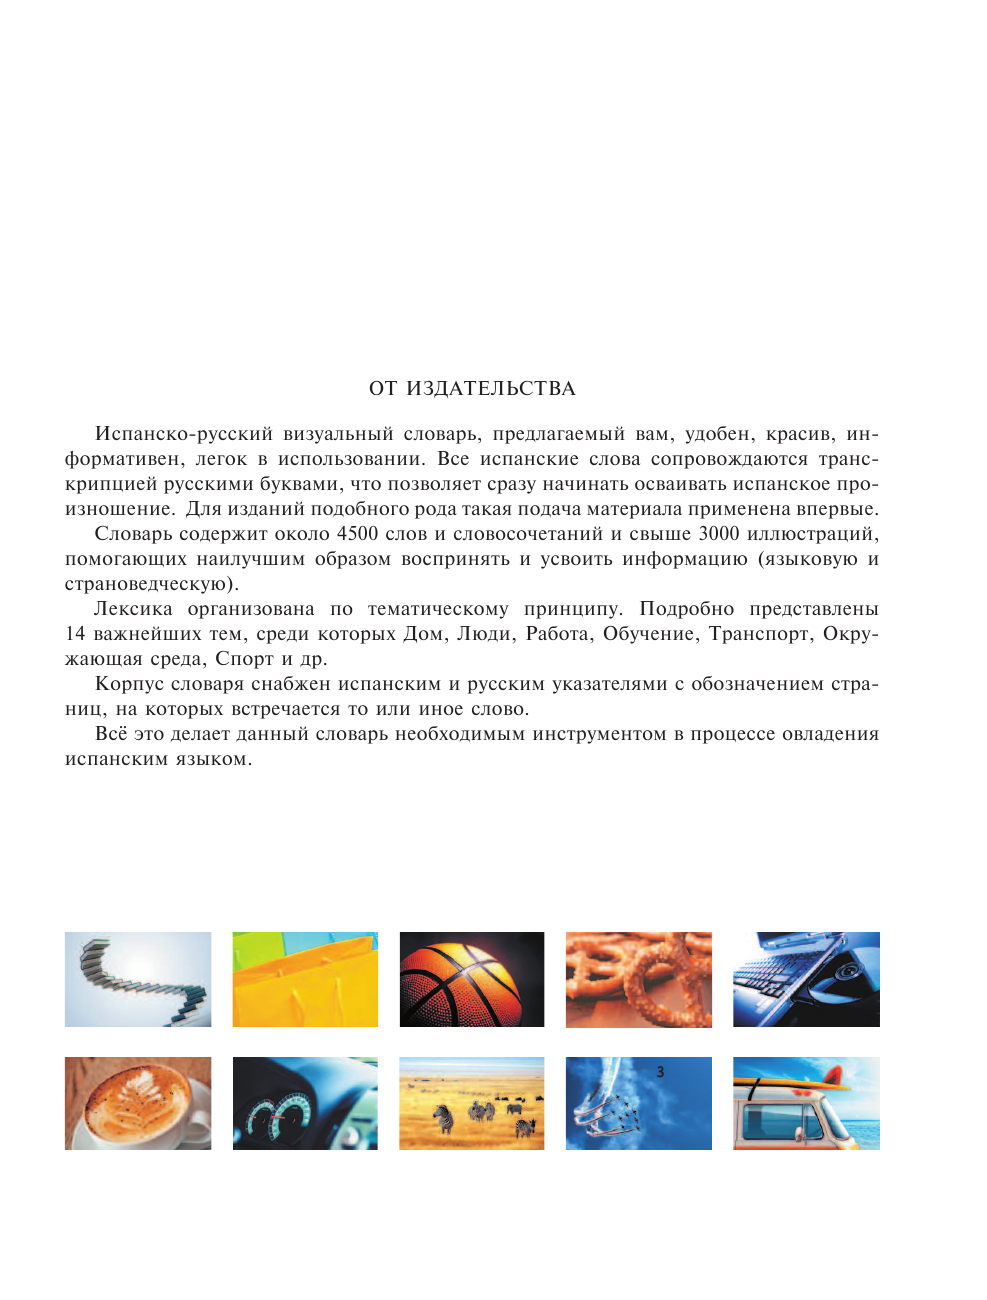  Испанско-русский визуальный словарь с транскрипцией - страница 4